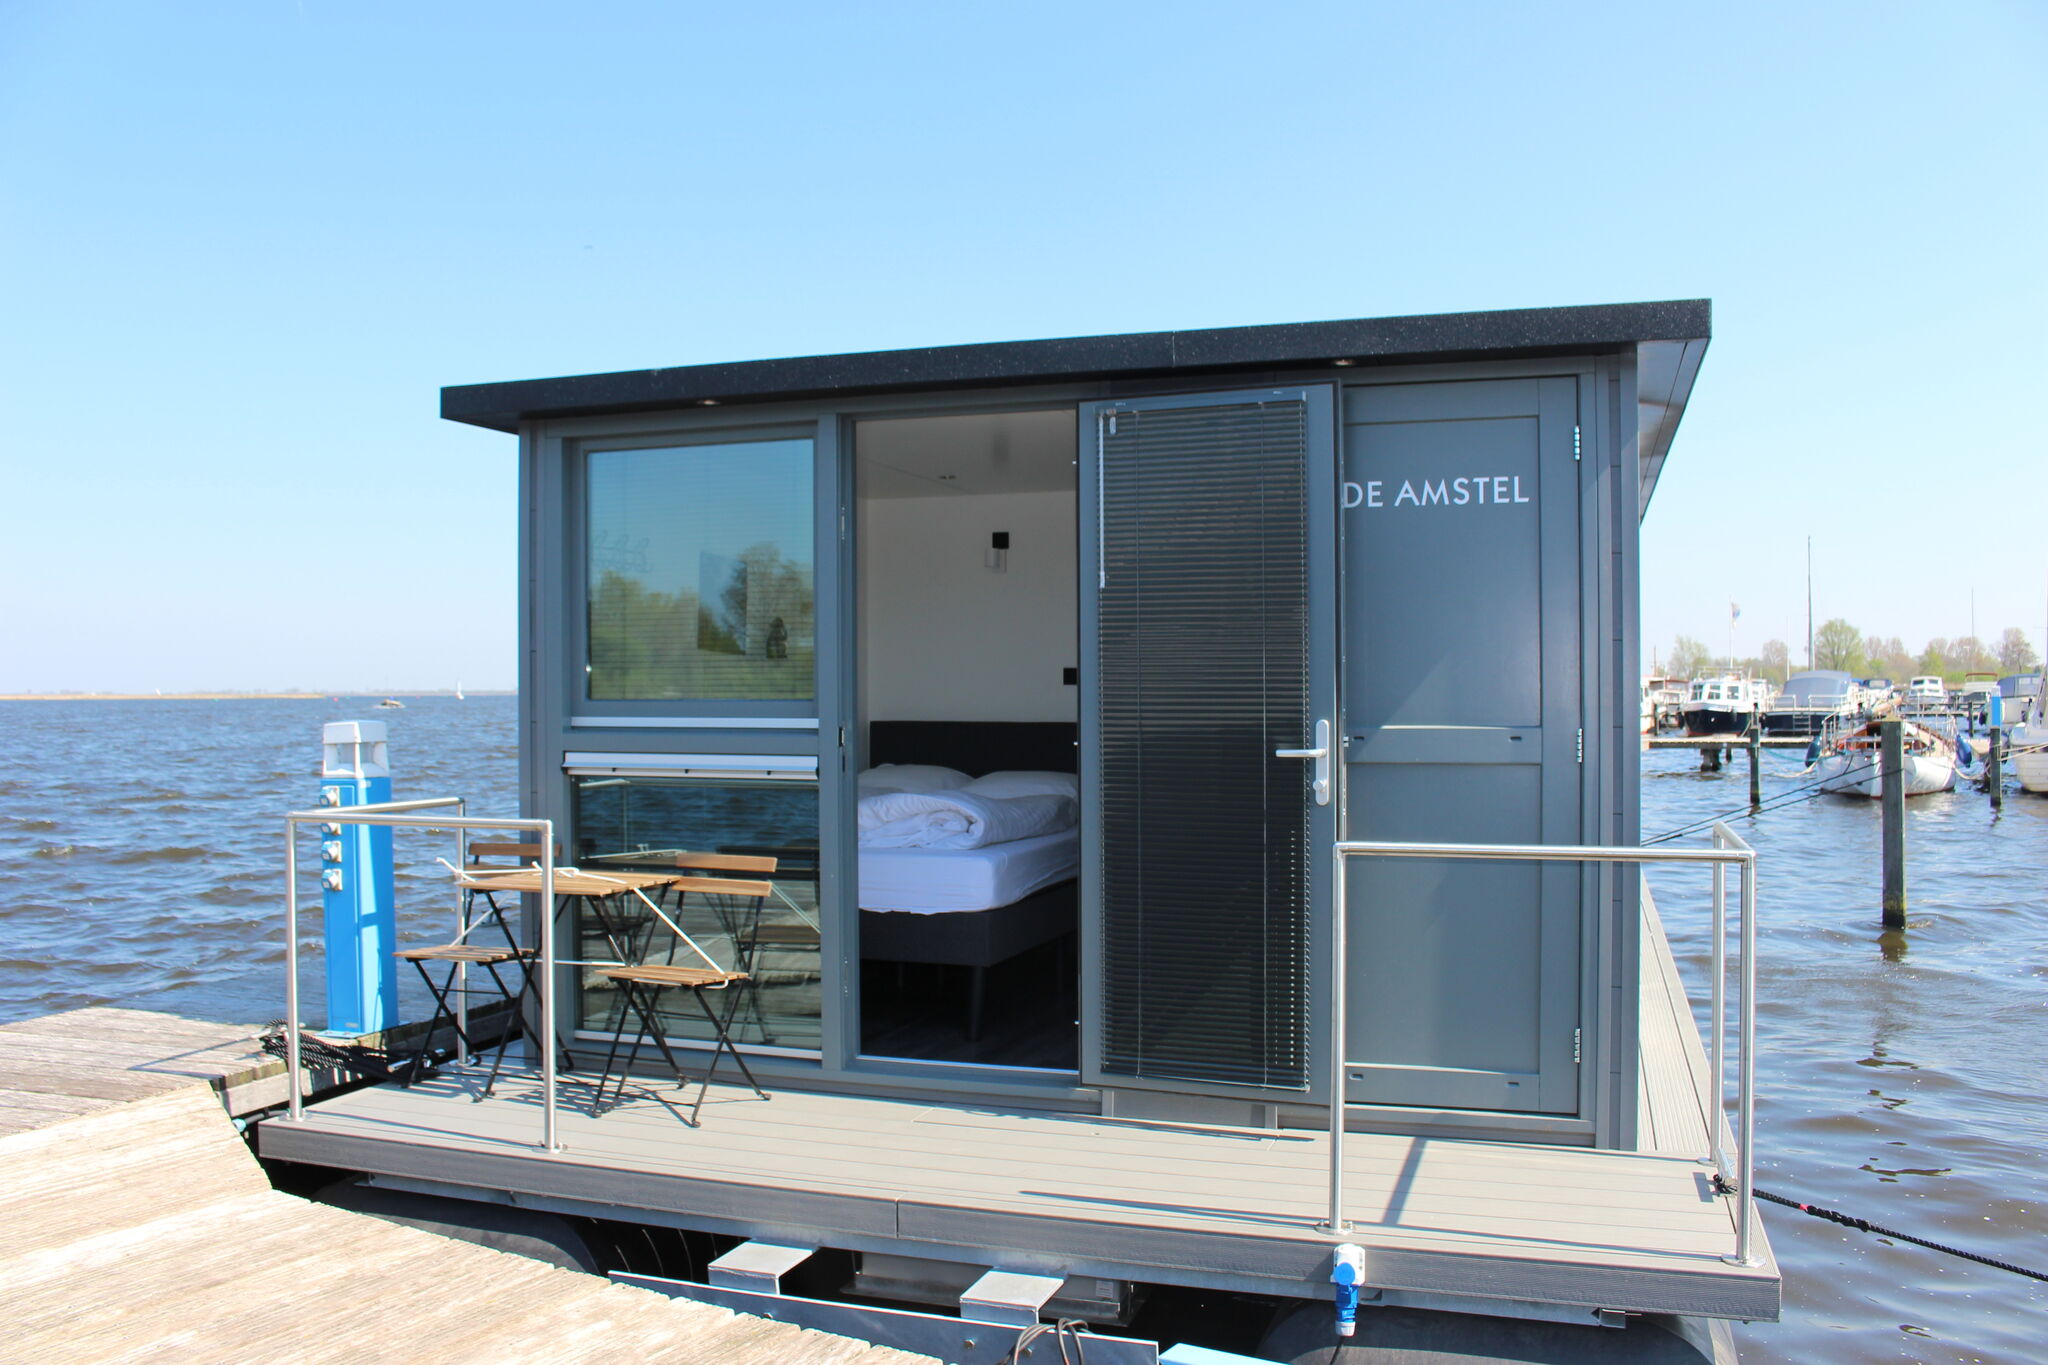 Moderne woonboot met airco gelegen in jachthaven